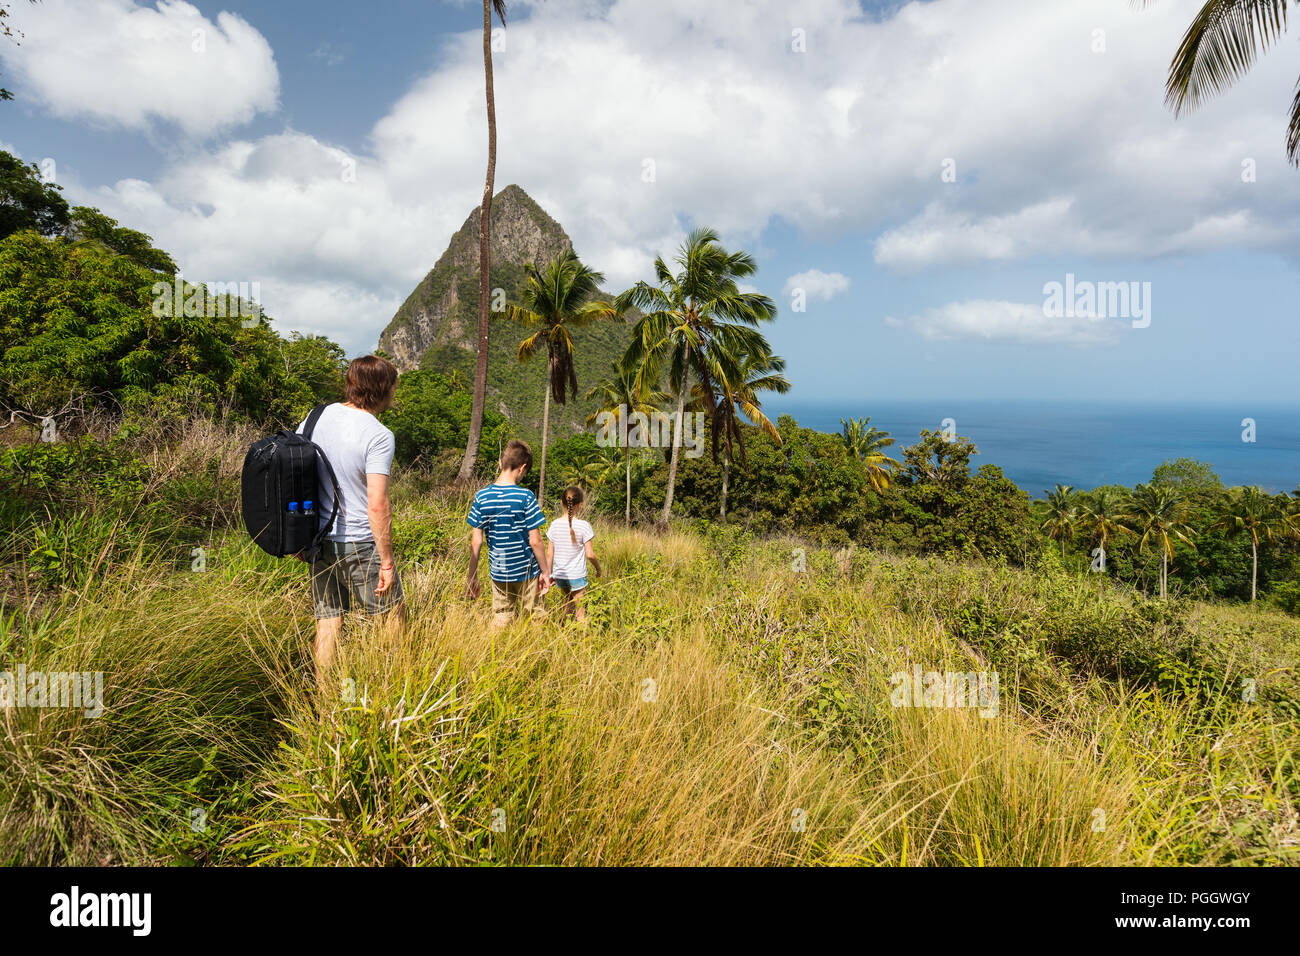 La famiglia del padre e bambini escursioni sul giorno di estate a isola tropicale di St Lucia nei Caraibi con fantastiche vedute di iconico Pitons mountain Foto Stock